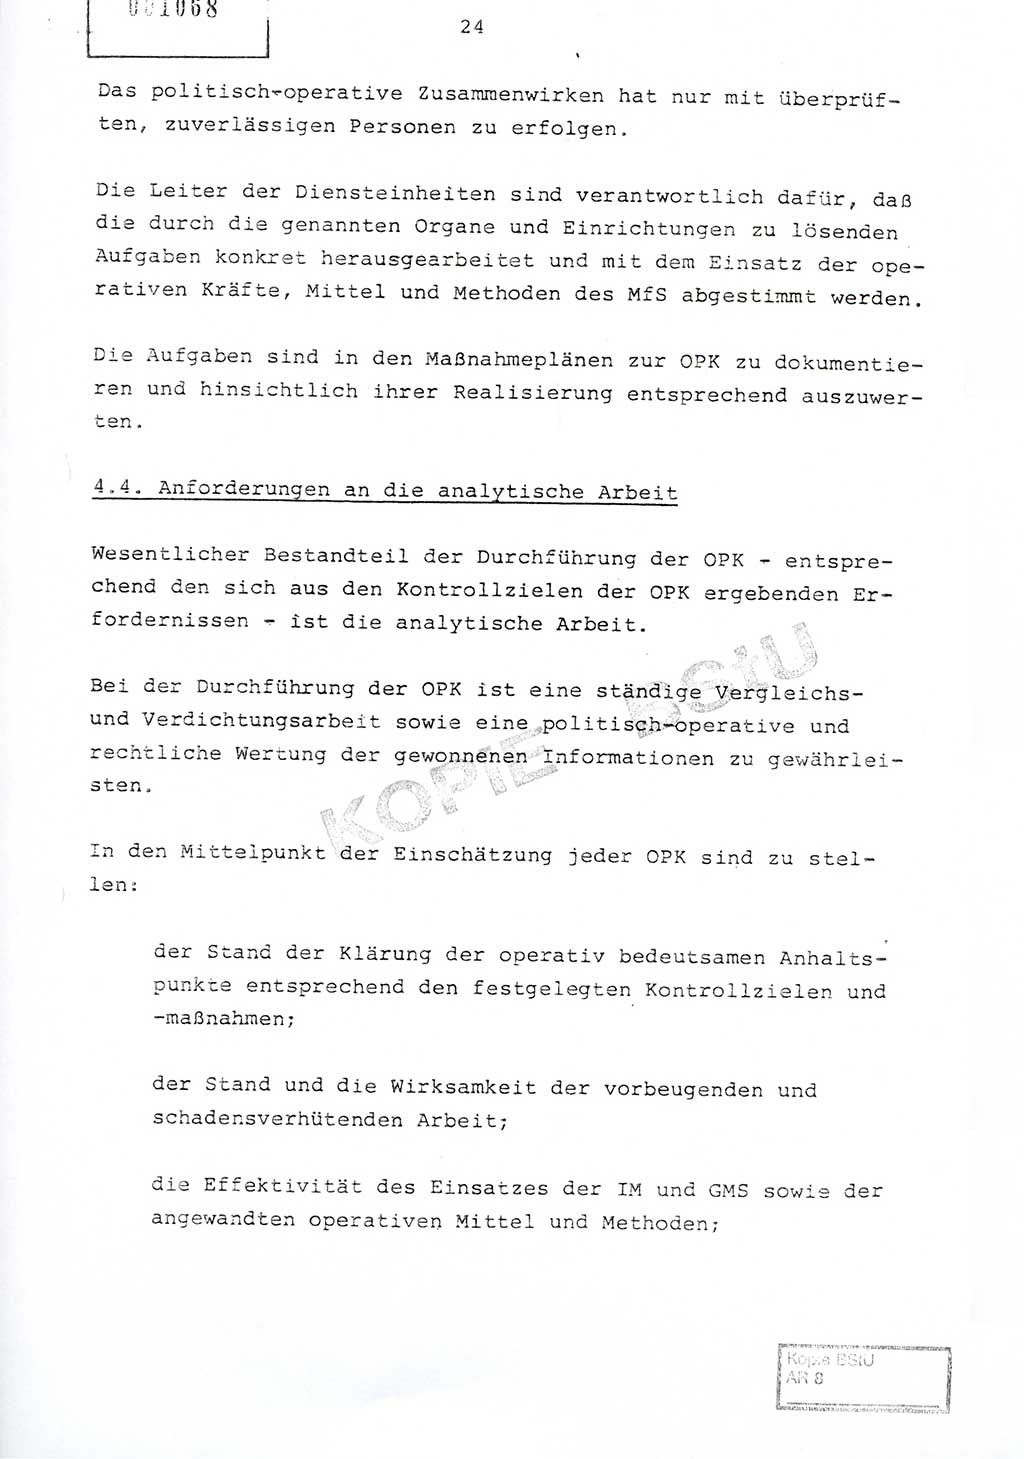 Richtlinie Nr. 1/81 über die operative Personenkontrolle (OPK), Ministerium für Staatssicherheit (MfS) [Deutsche Demokratische Republik (DDR)], Der Minister, Geheime Verschlußsache (GVS) ooo8-10/81, Berlin 1981, Blatt 24 (RL 1/81 OPK DDR MfS Min. GVS ooo8-10/81 1981, Bl. 24)